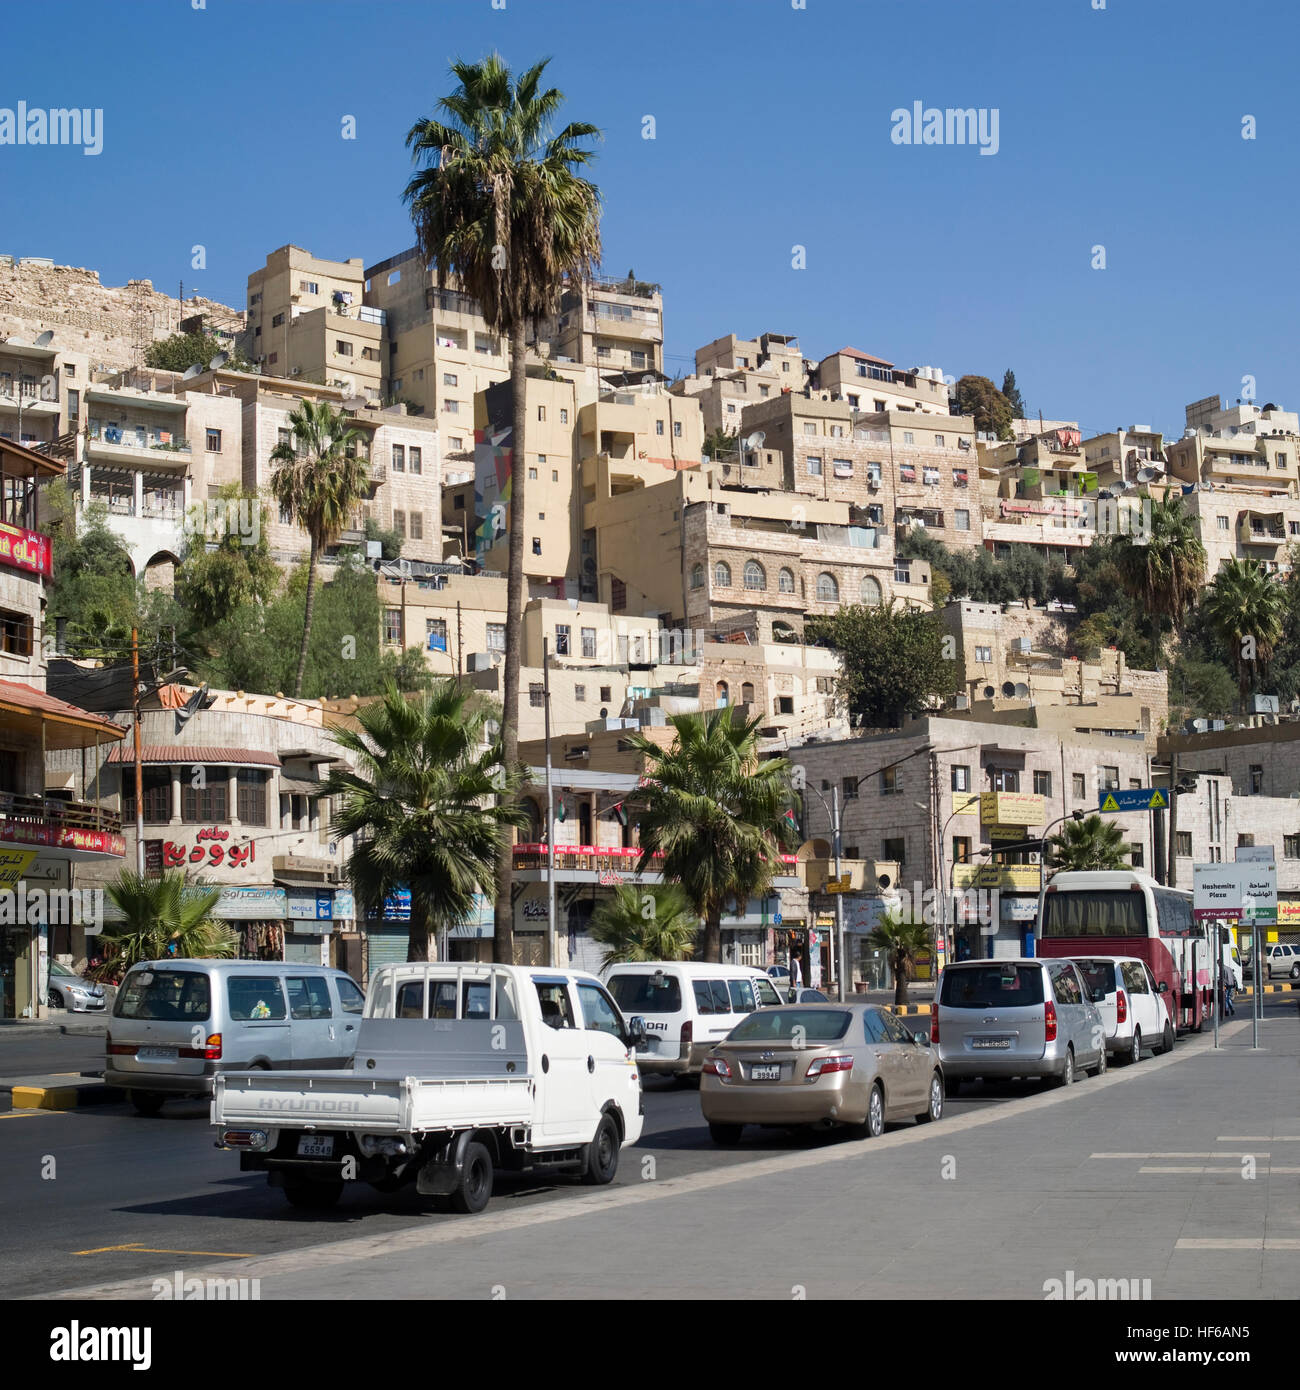 Downtown Amman street scene Stock Photo